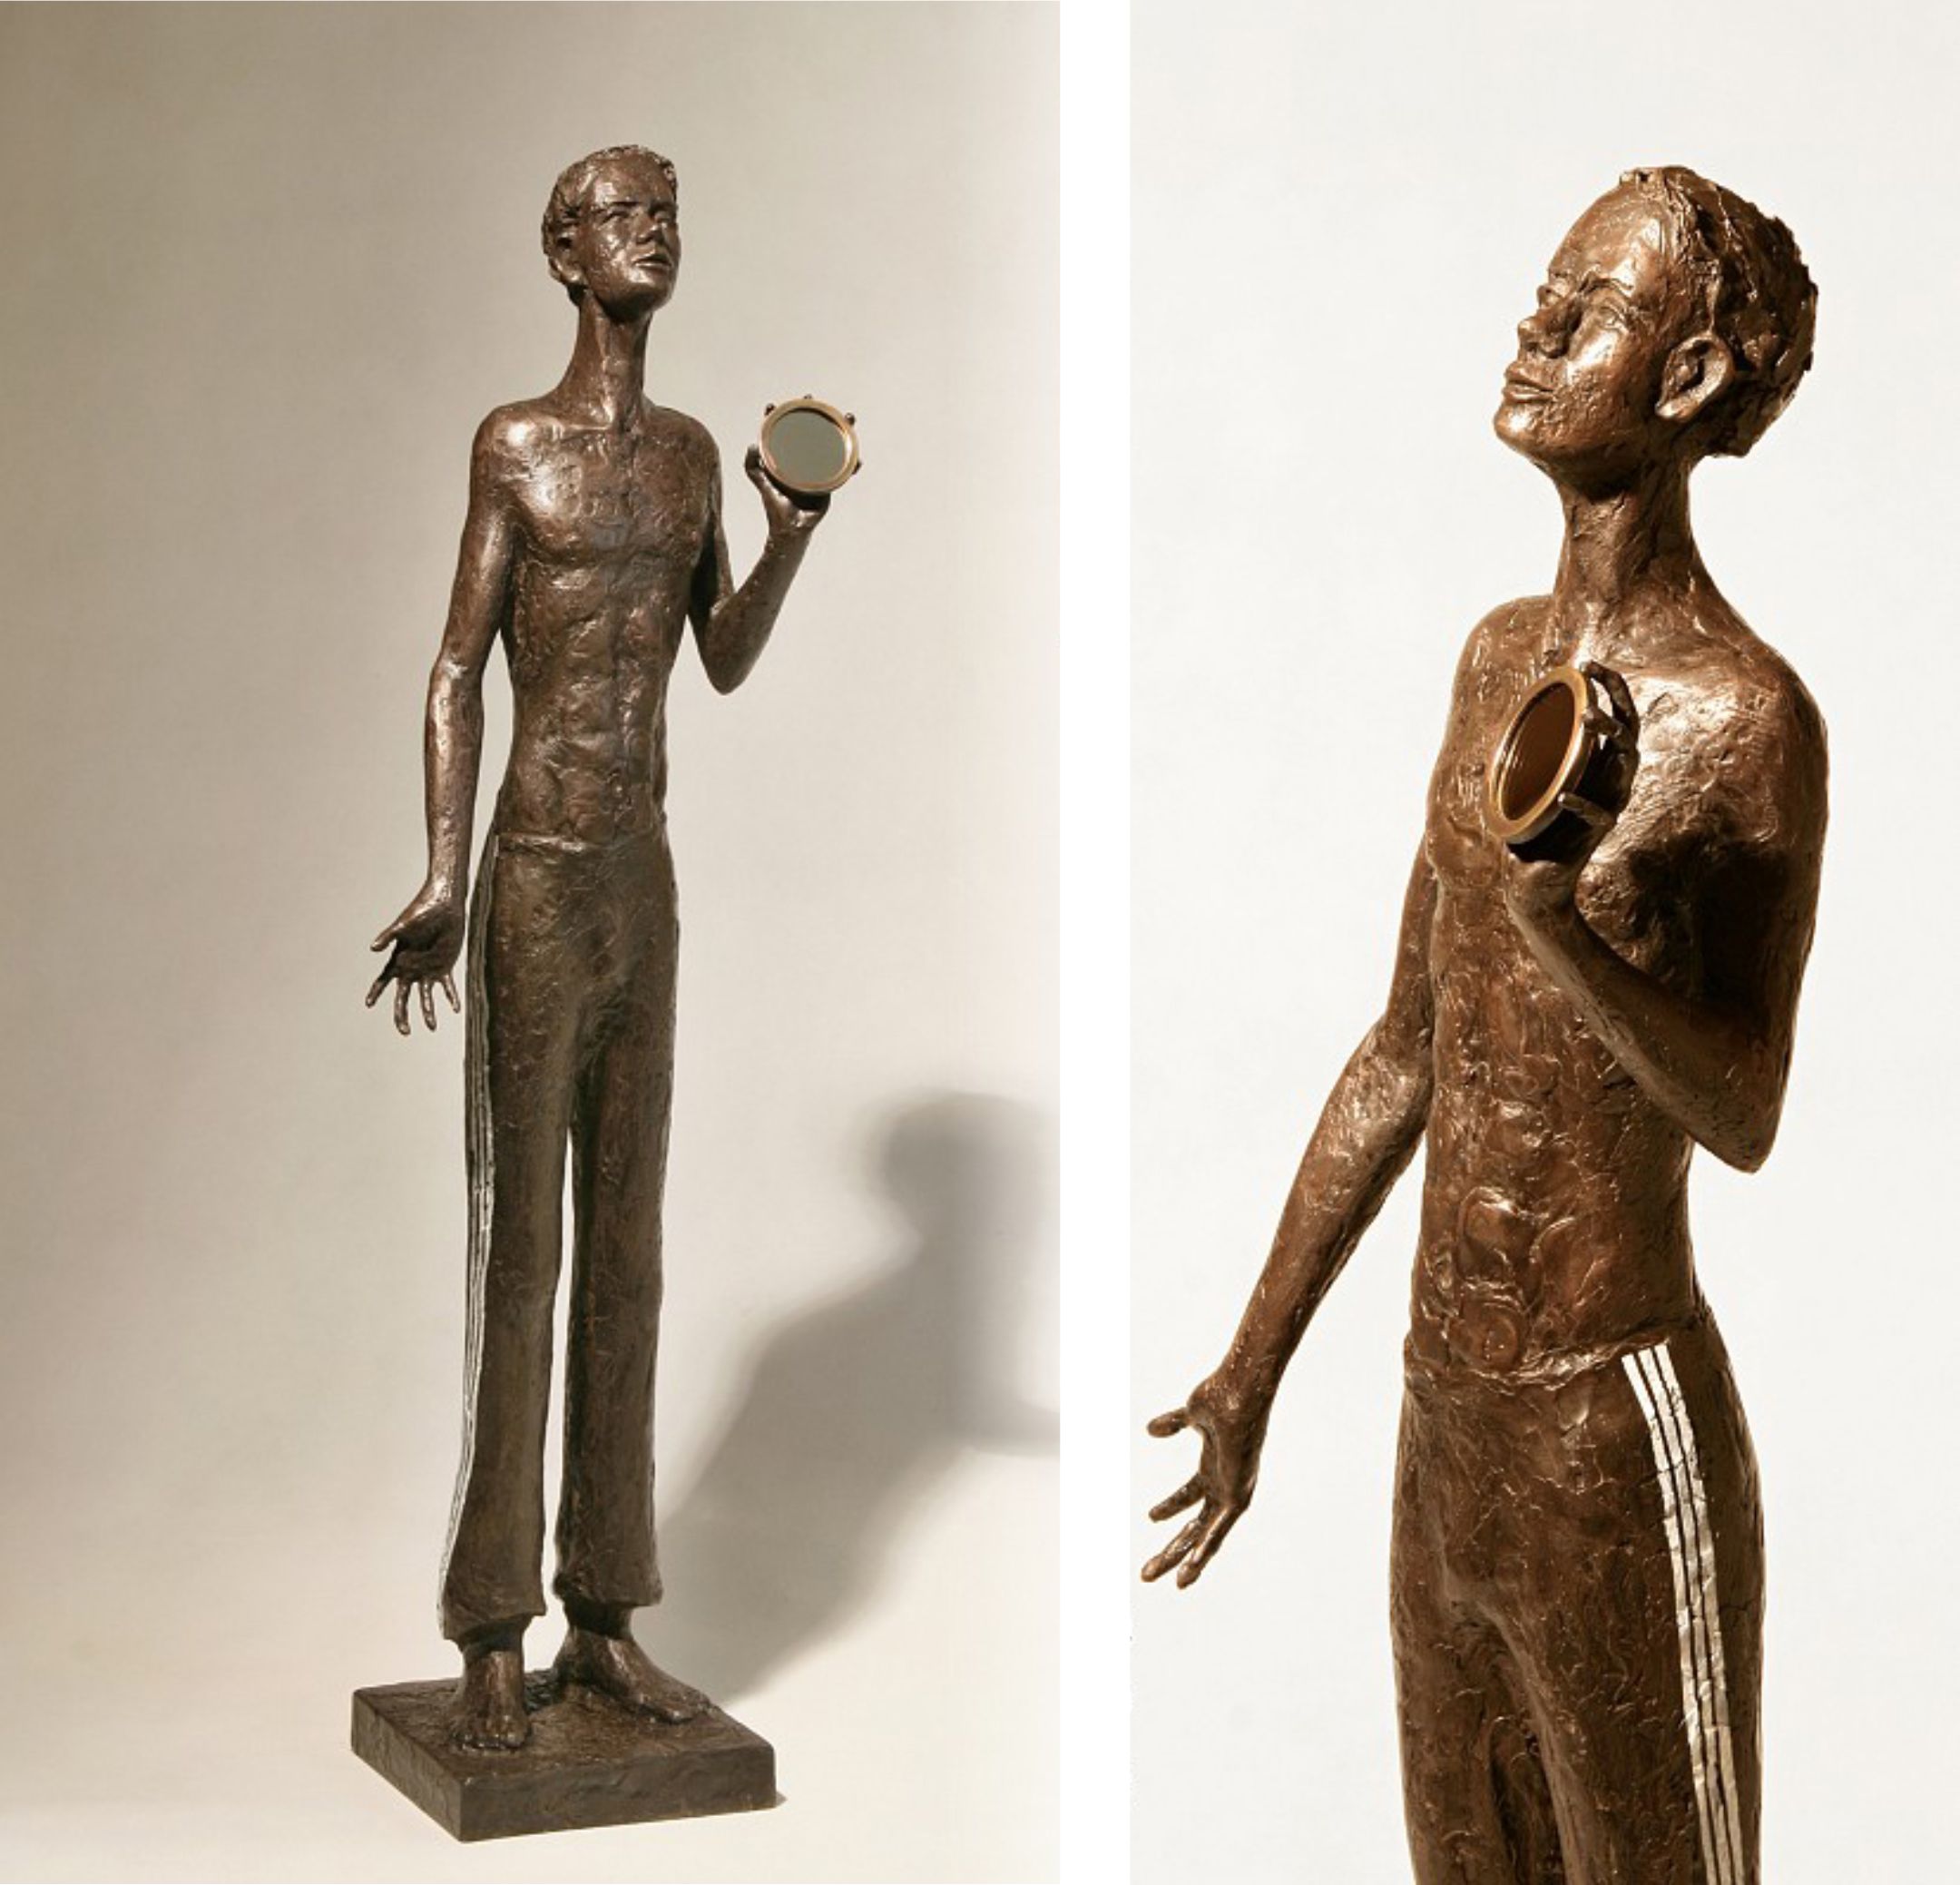 Chlapec se zrcádkem, 2018, bronz, výška 86 cm, 75 000,- Kč (bez DPH)